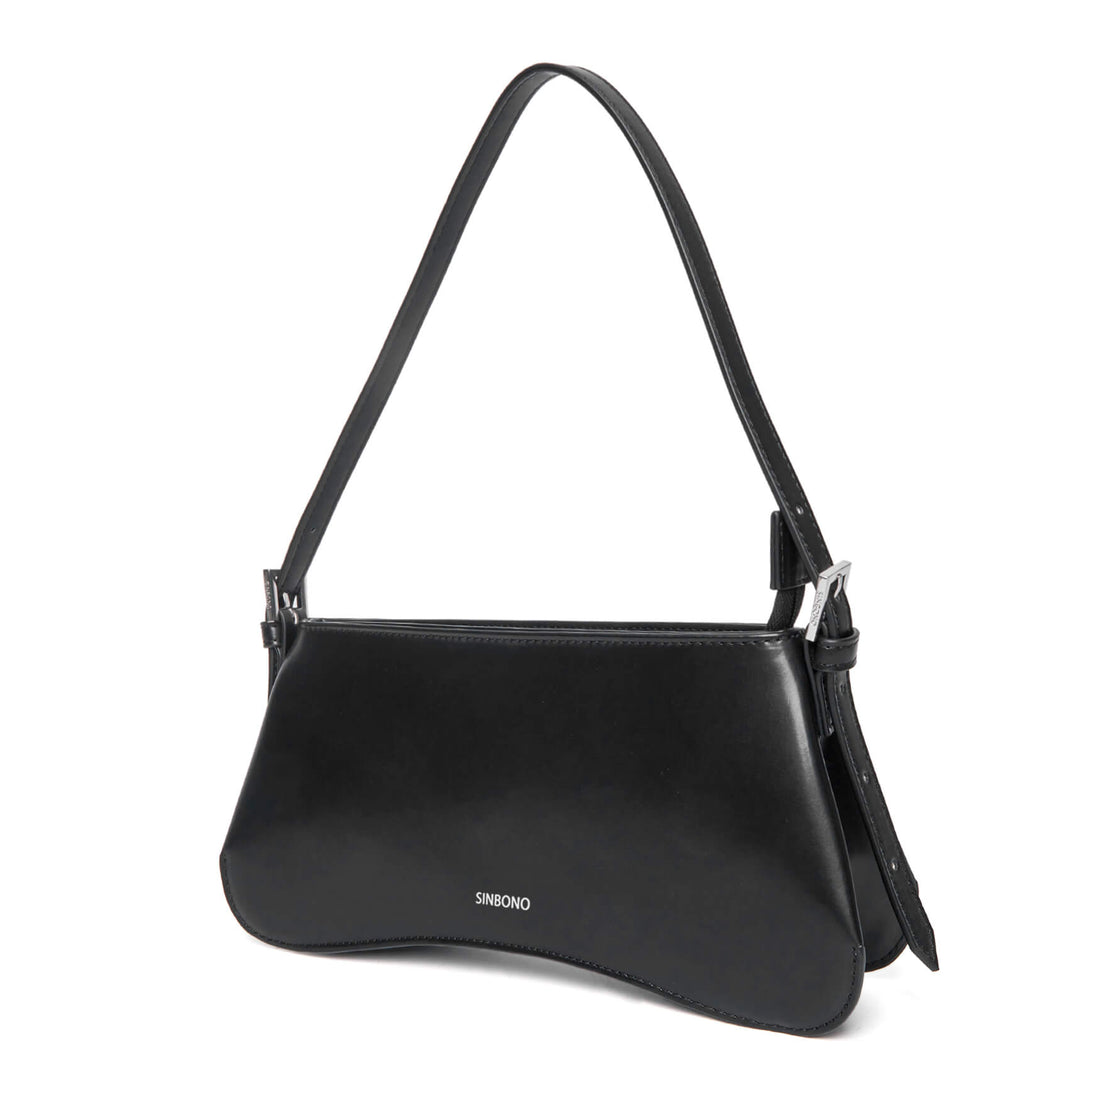 SINBONO Eva Shoulder Bag Black - Faux Suede Lining Shoulder Bag